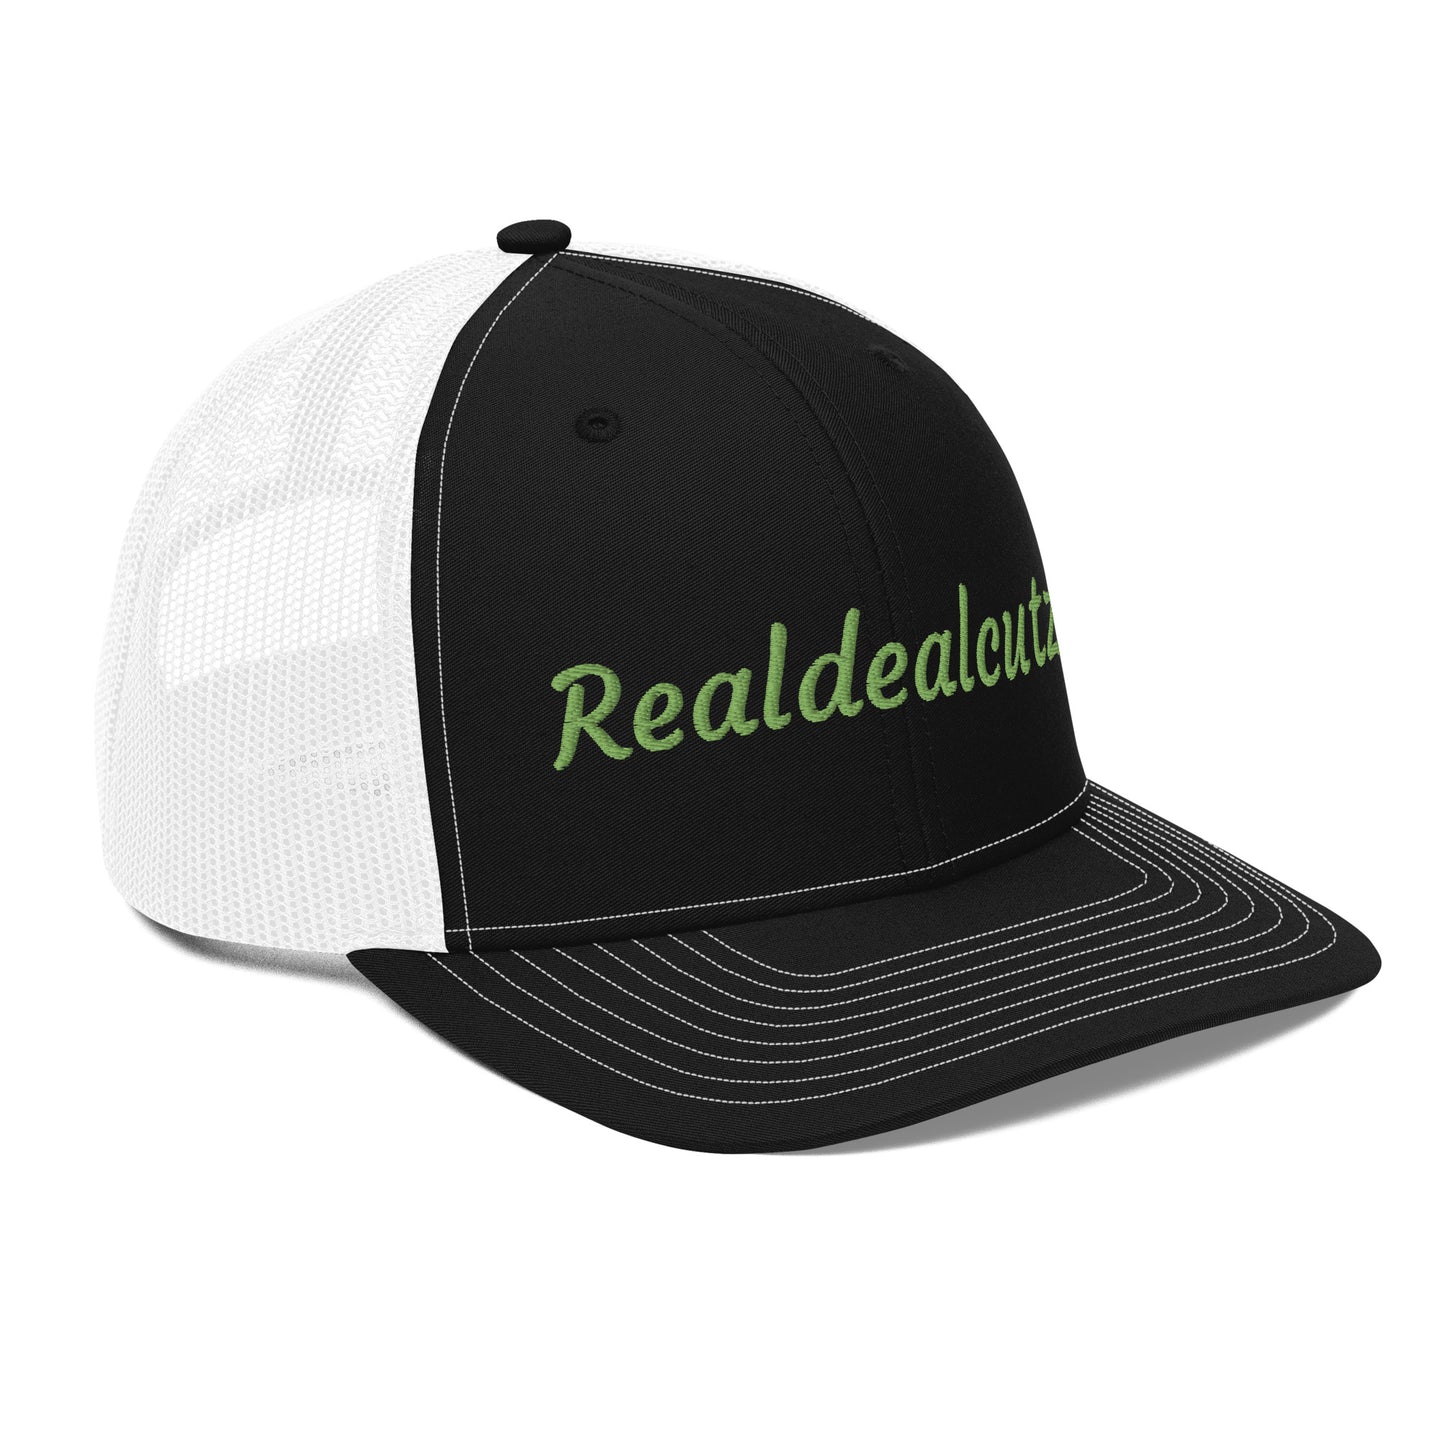 Realdealcutz Trucker Cap